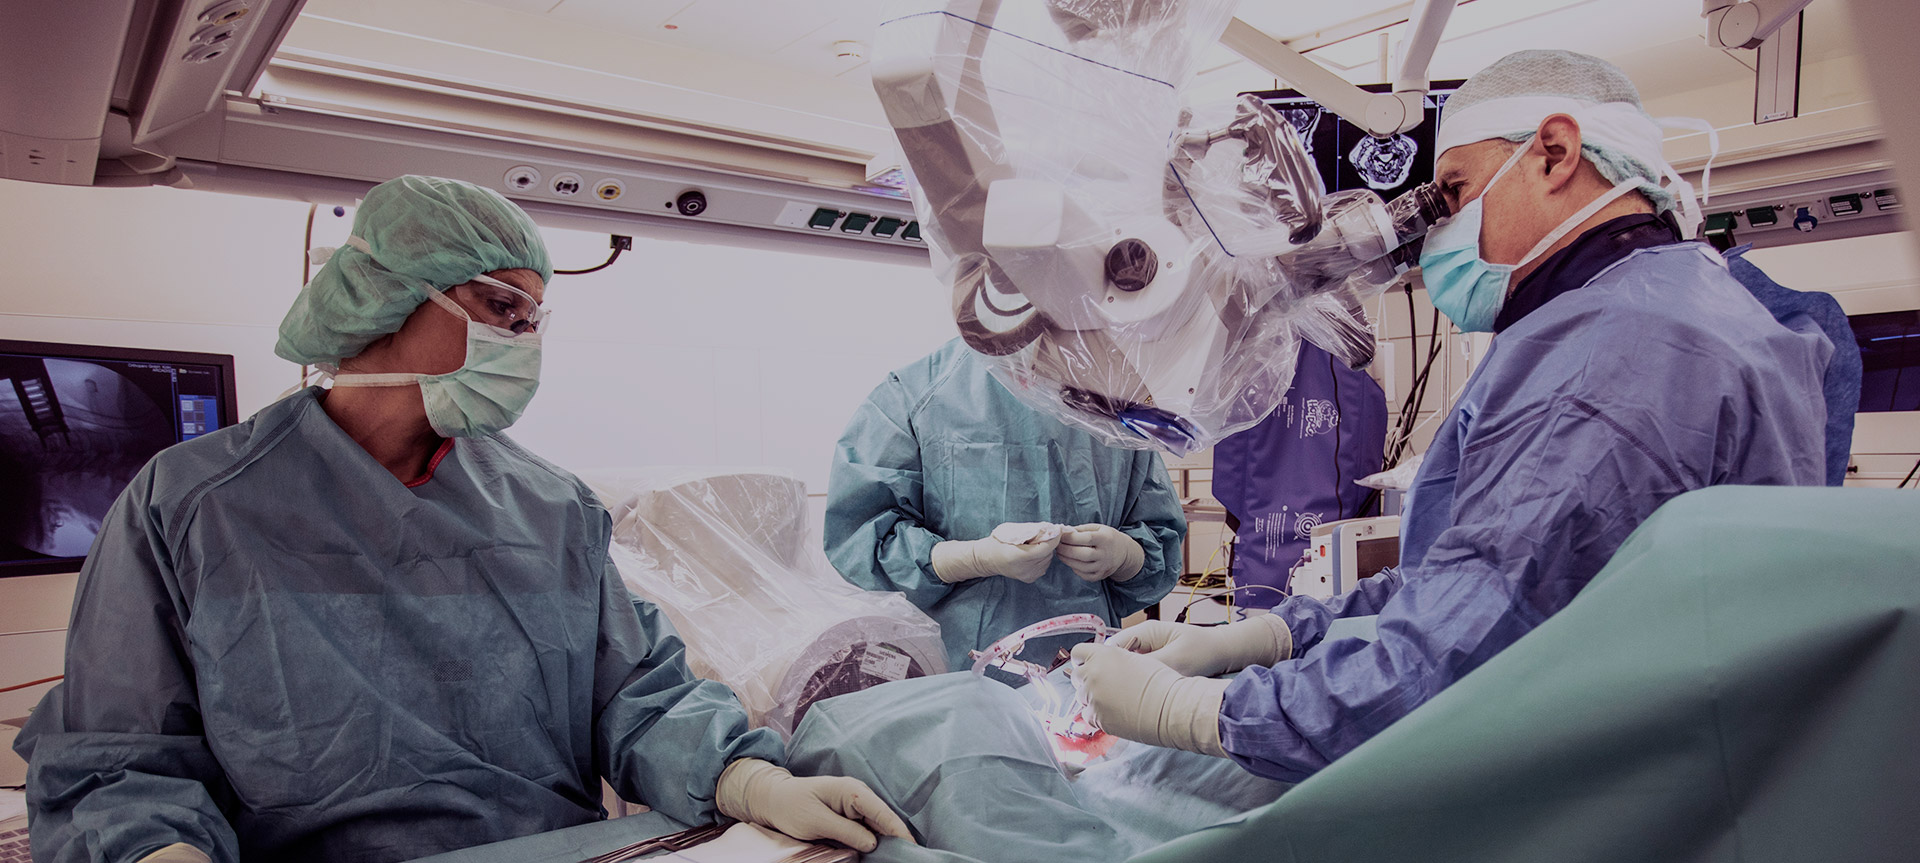 Wirbelsäulenchirurgie - Chefarzt Dr. Christopoulos